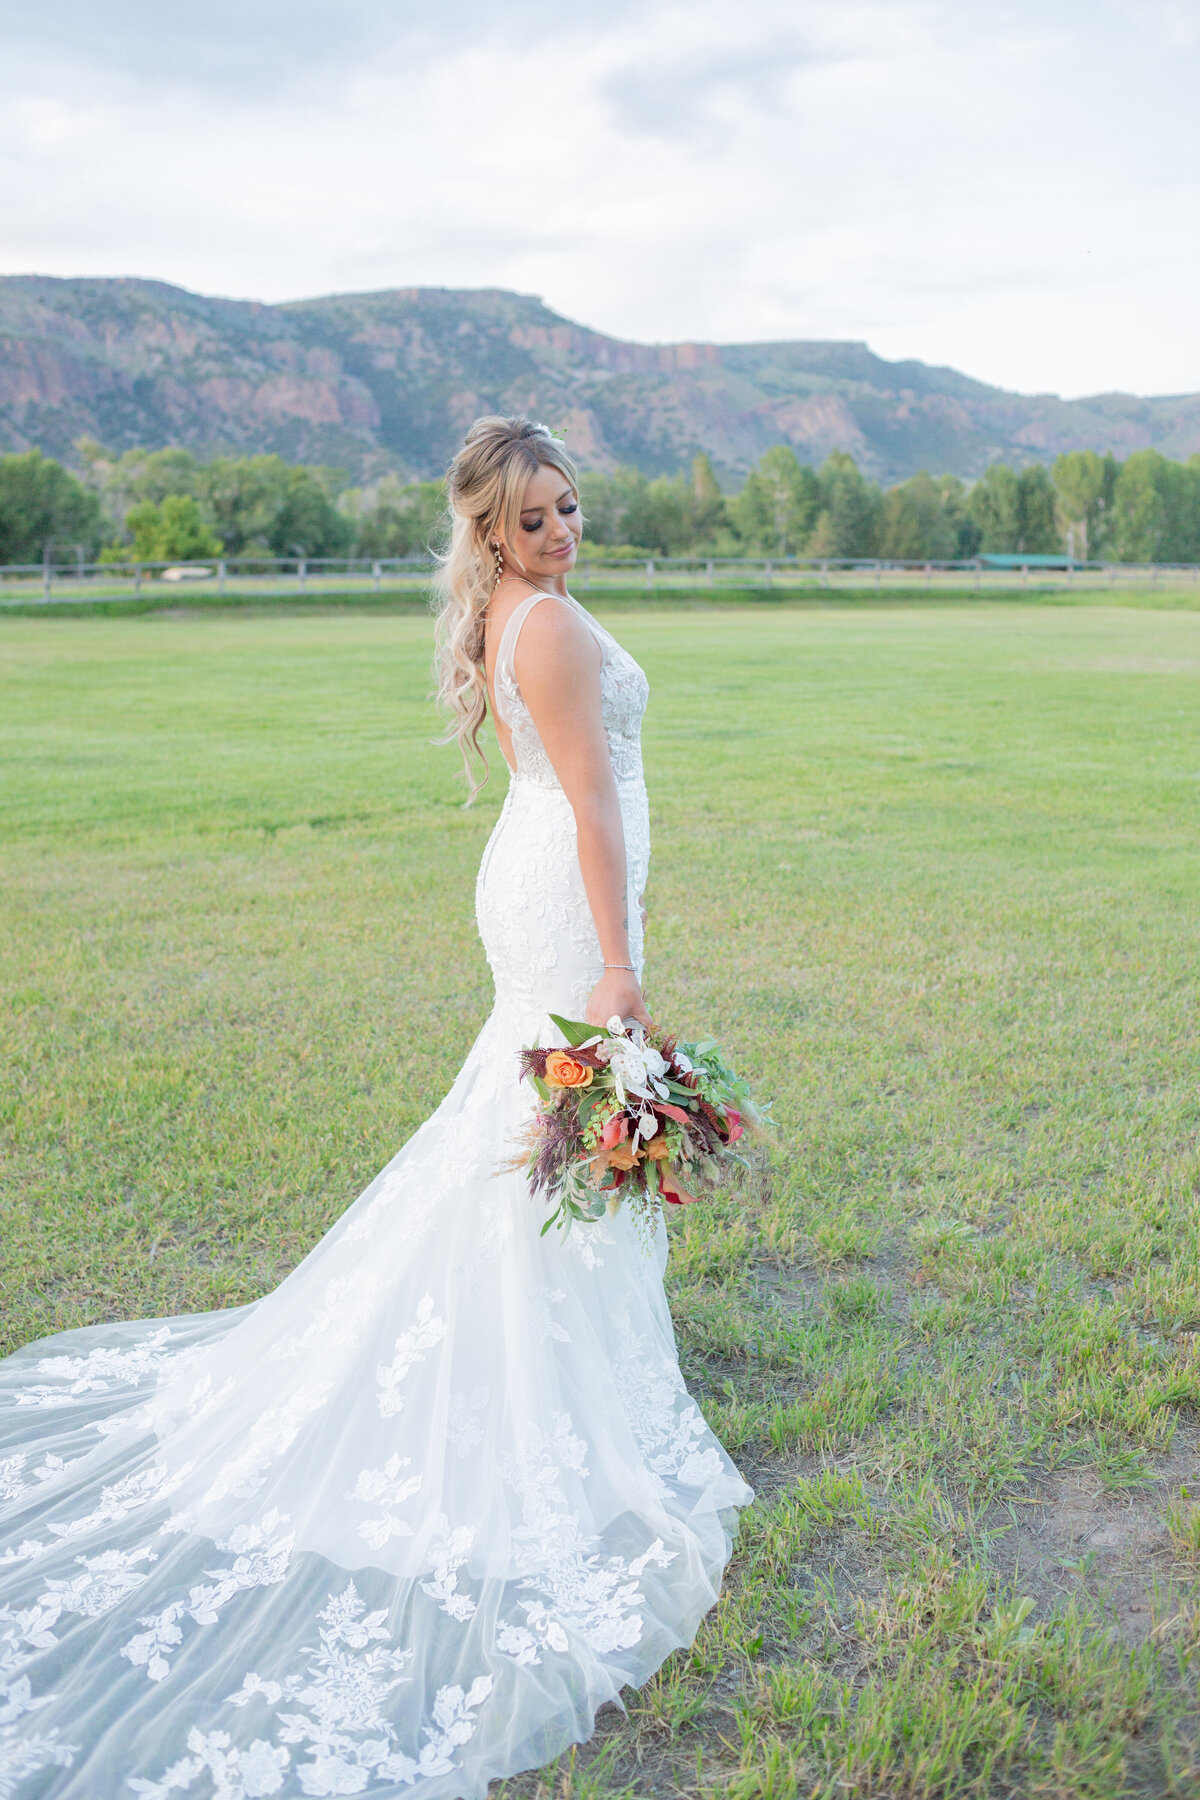 Washington Elopement Photographer captures bride holding bouquet during outdoor bridal portraits